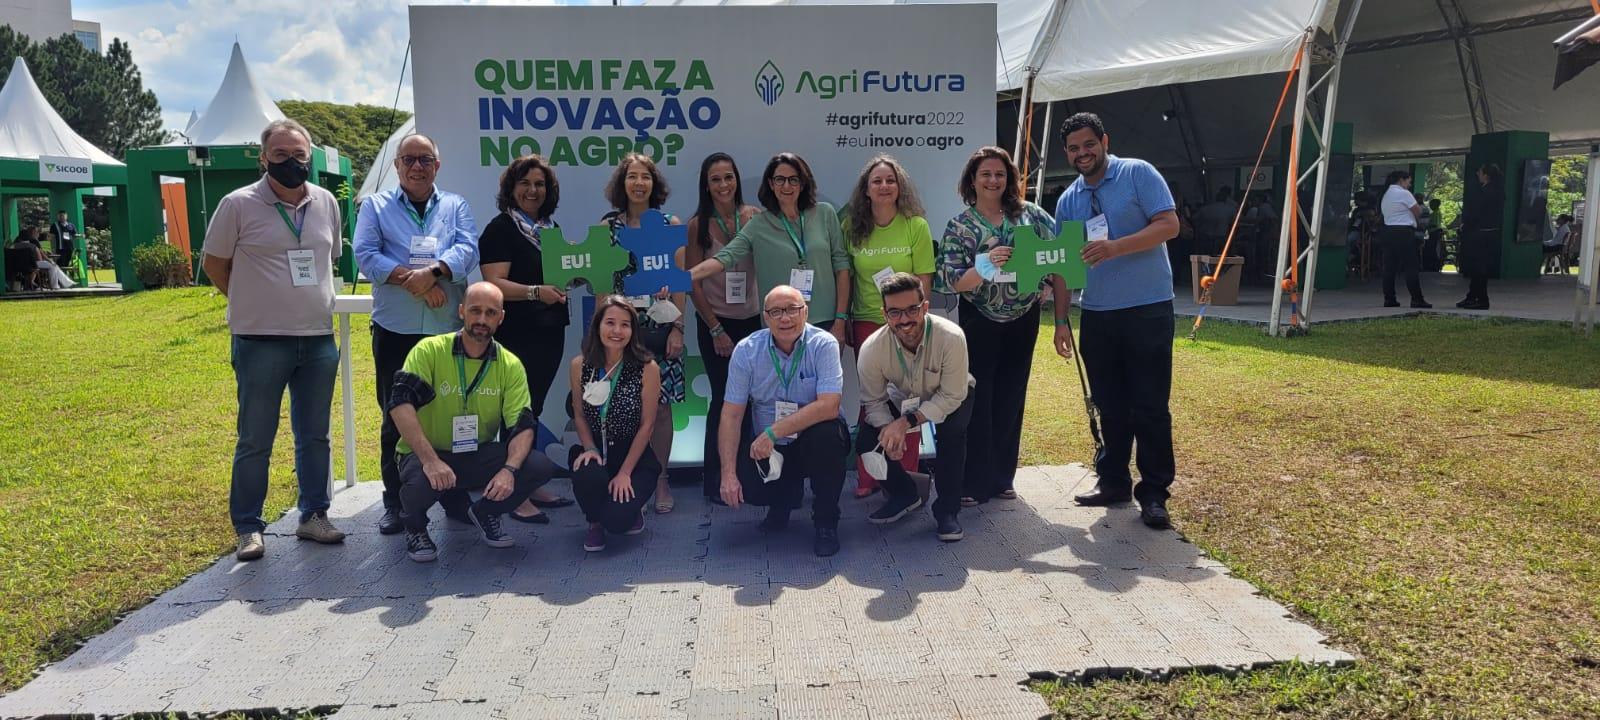 Imagem: Conexão.f marcou presença no AgriFutura 2022